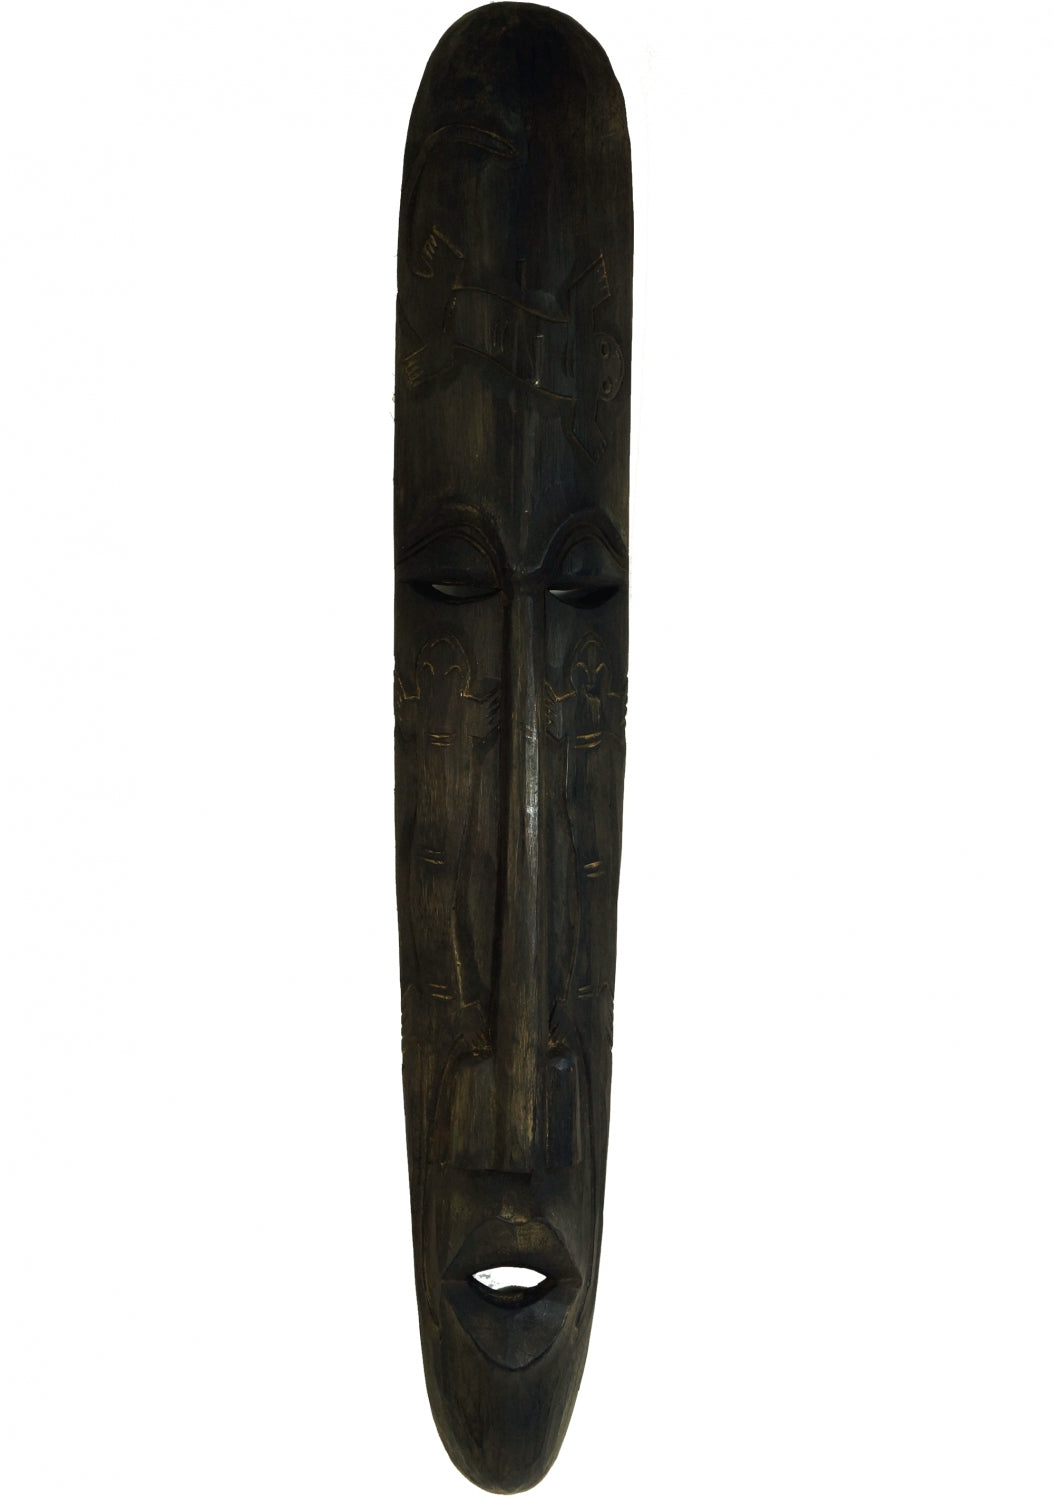 Indonesische Holzmaske schwarz braun, 92 cm groß